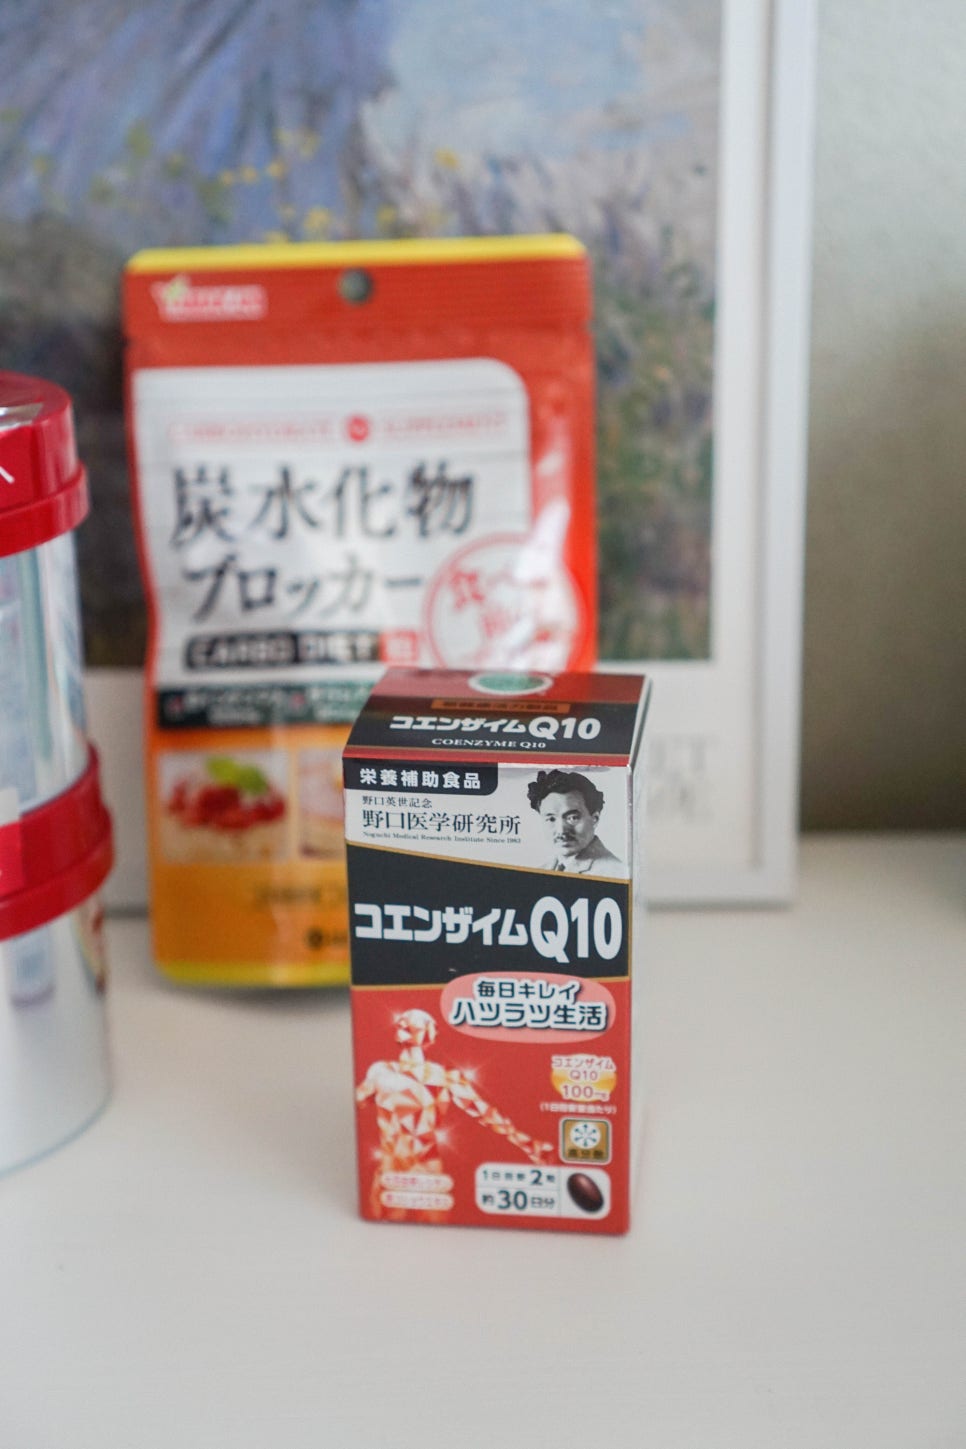 일본직구 여행 쇼핑리스트 쿠팡 로켓직구로 구입하기